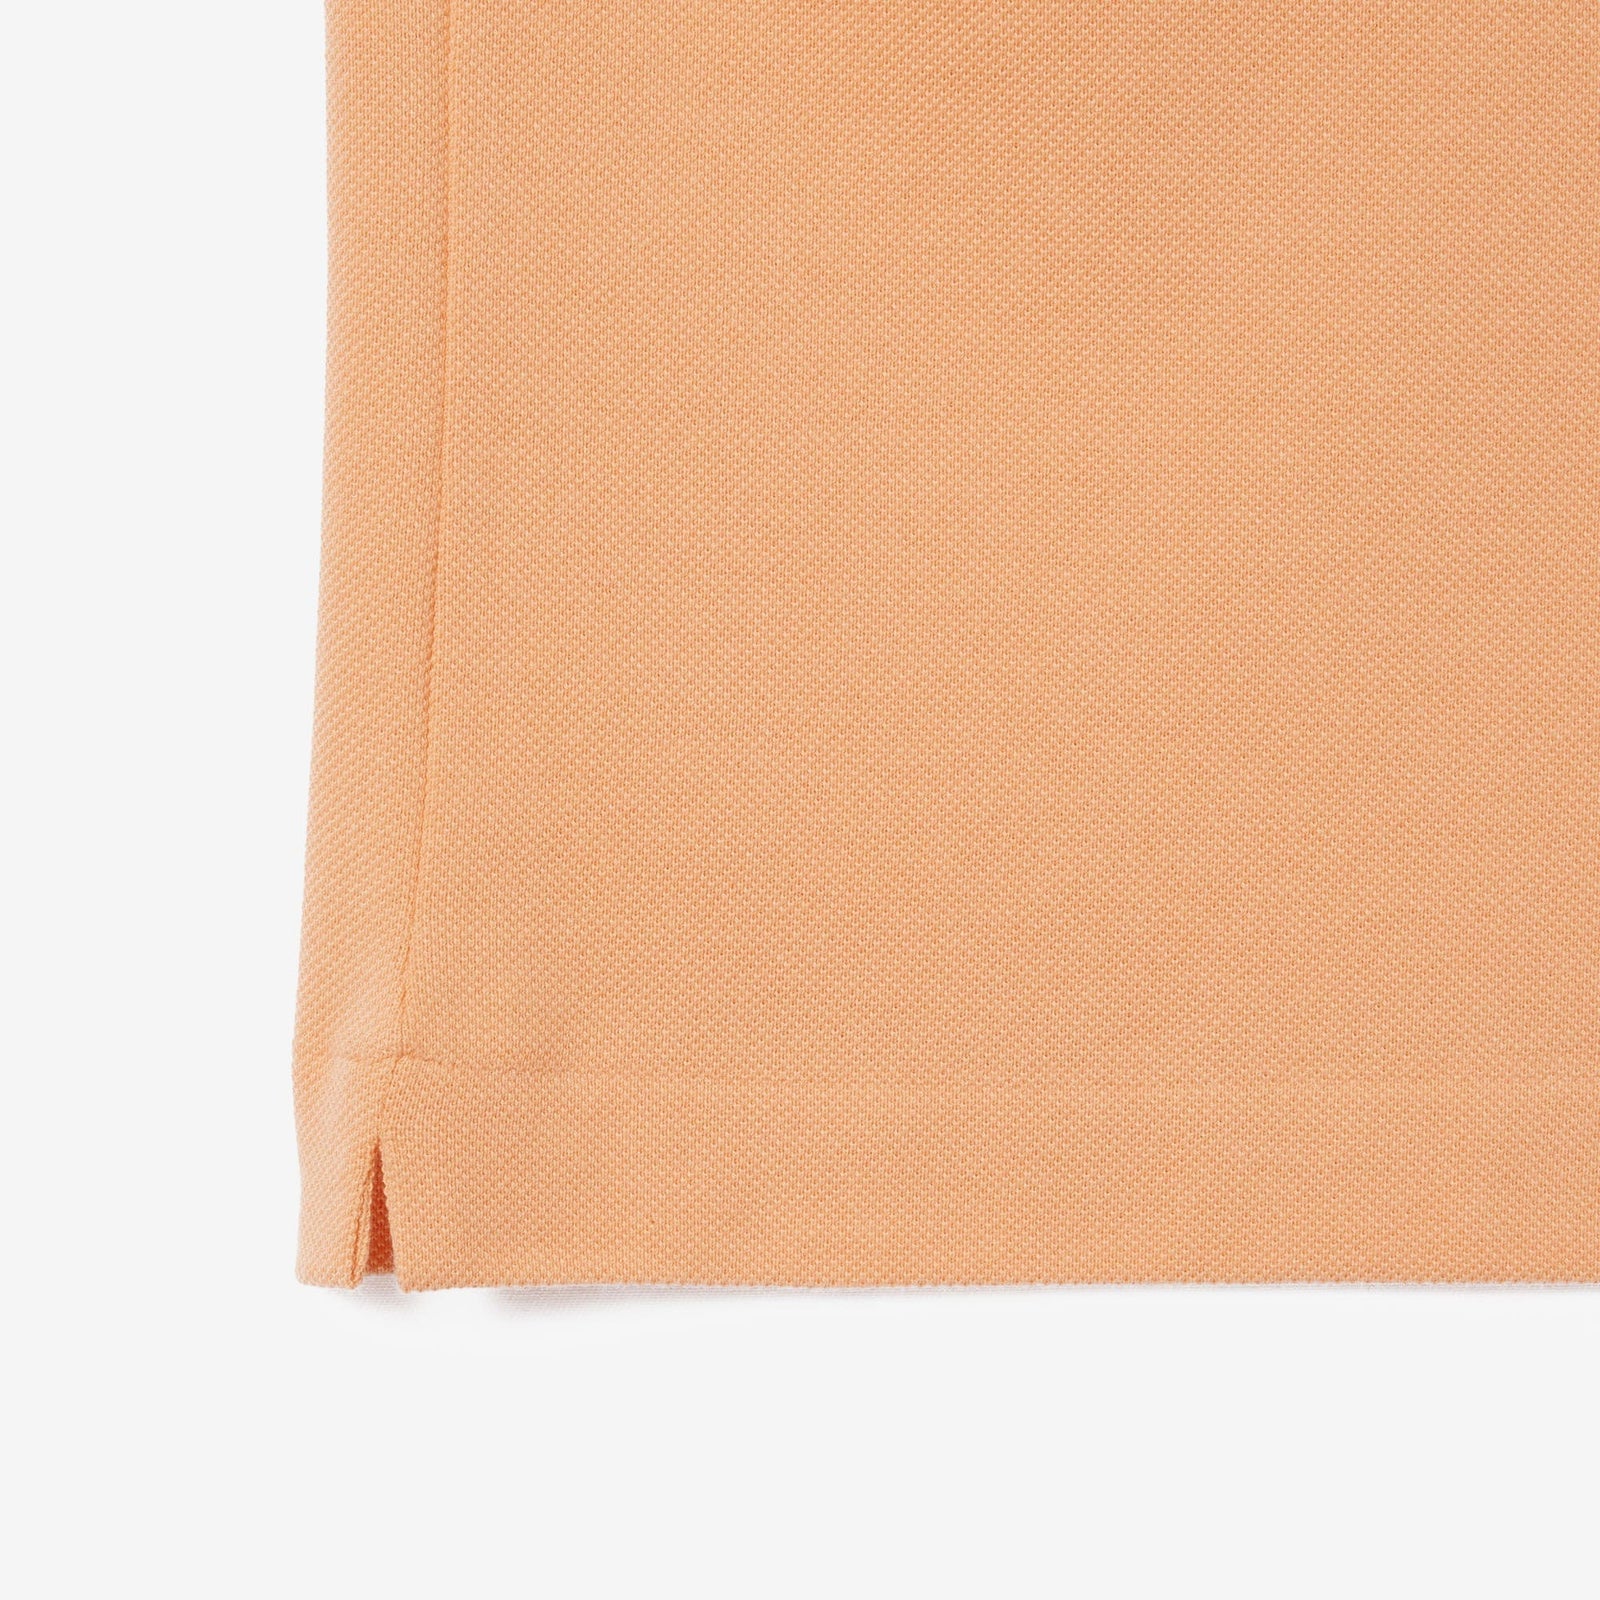 Lacoste Original L.12.12 Petit Pique Cotton Polo Shirt in Light Orange